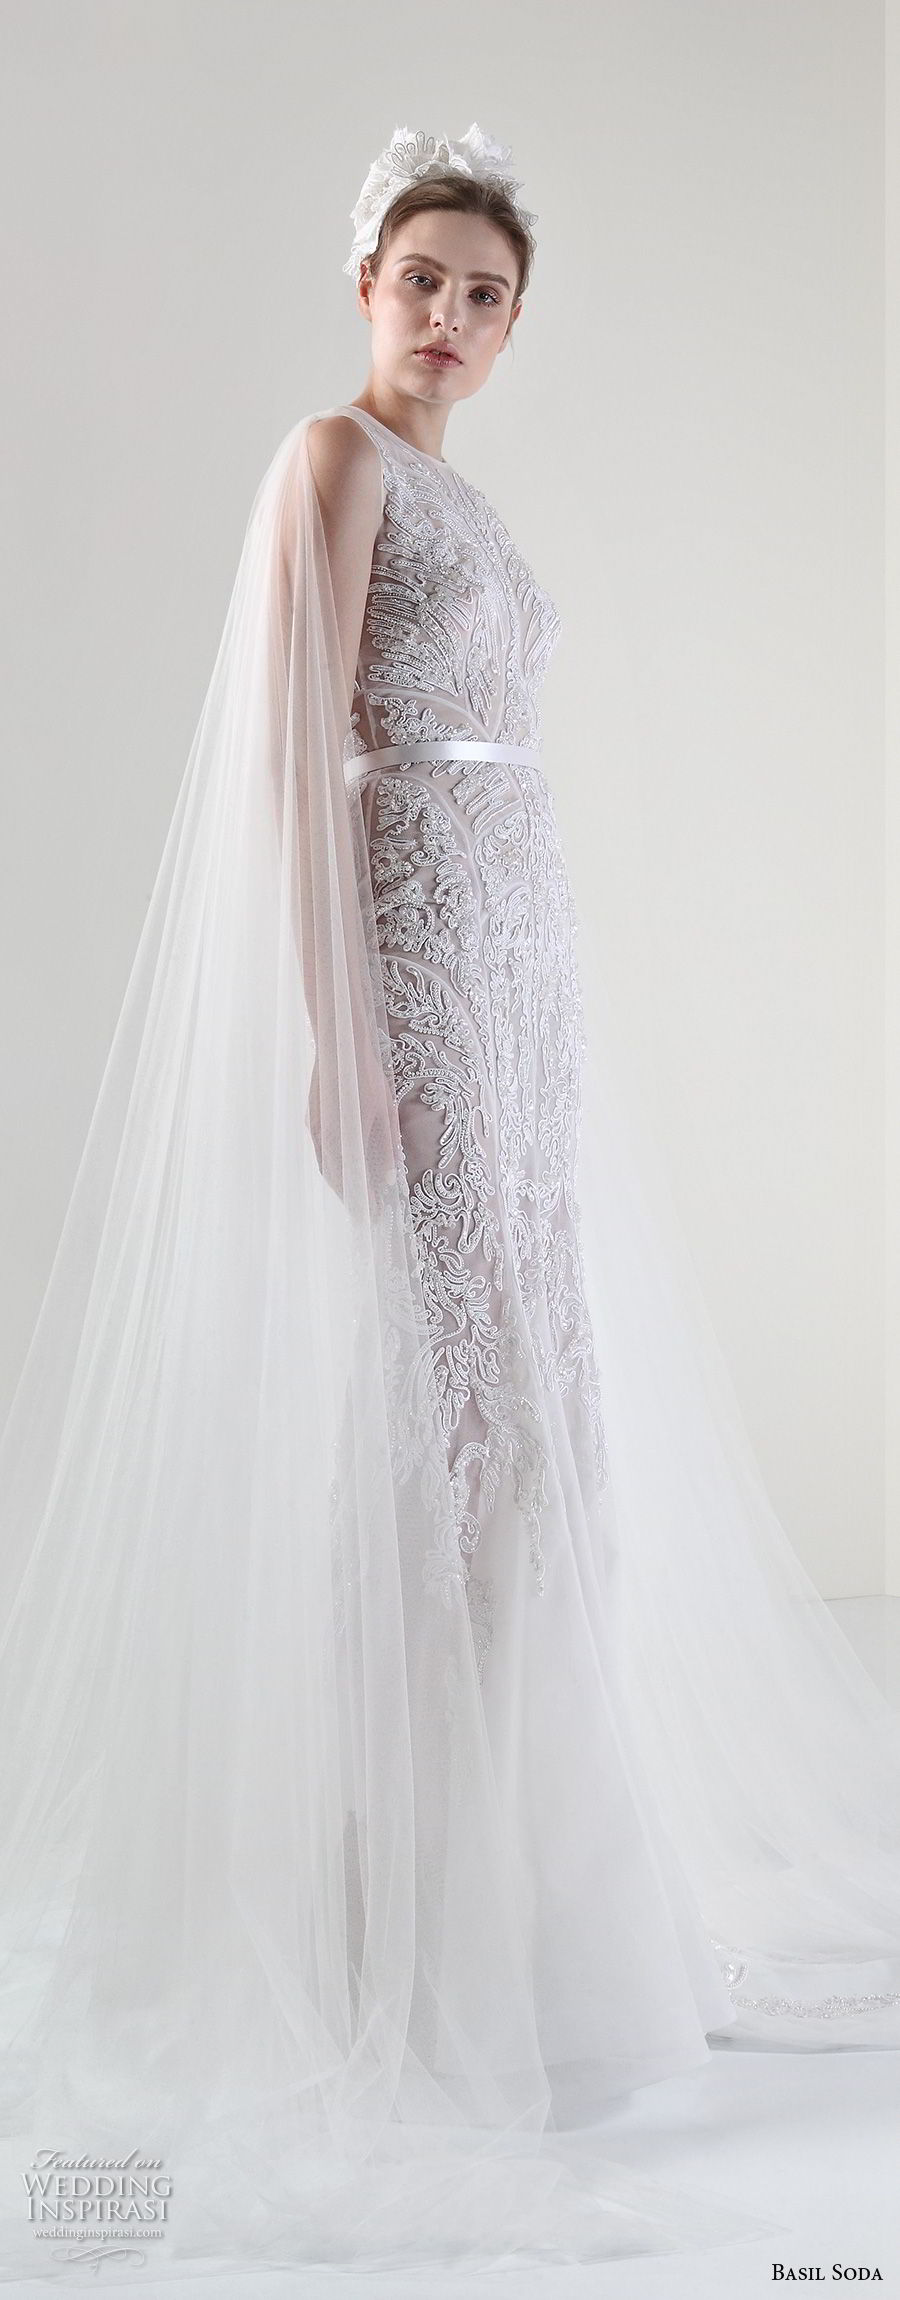 basil soda 2017 bridal sleeveless jewel neck full embellishment elegant gorgeous sheath wedding dress with tulle cape (7) mv